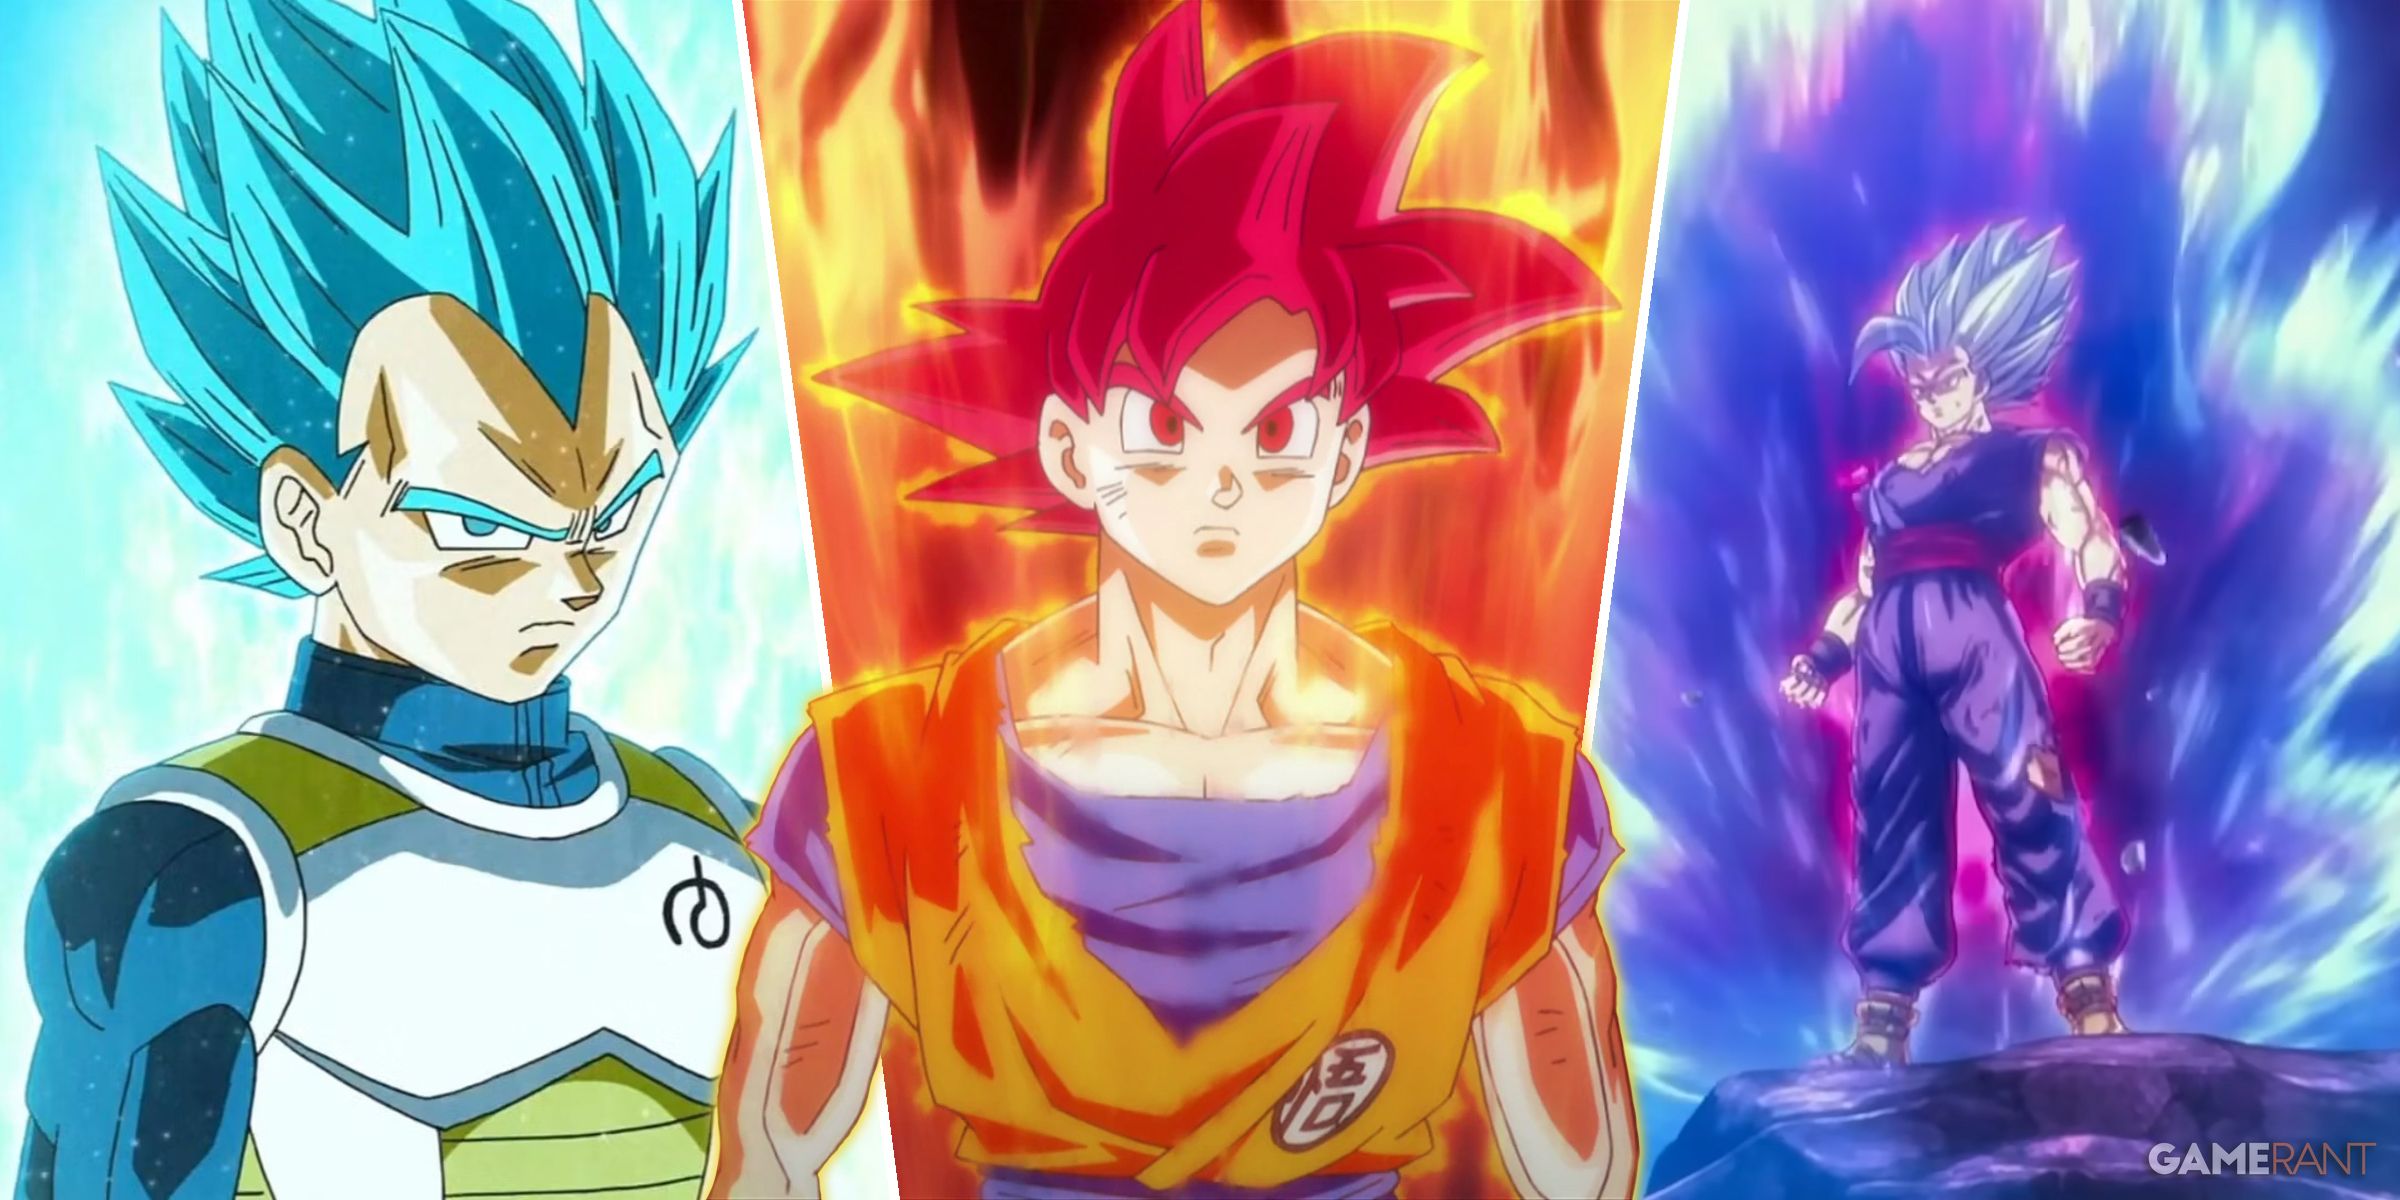 Super Saiyan Blue Vegeta, Super Saiyan God Goku, and Beast Gohan